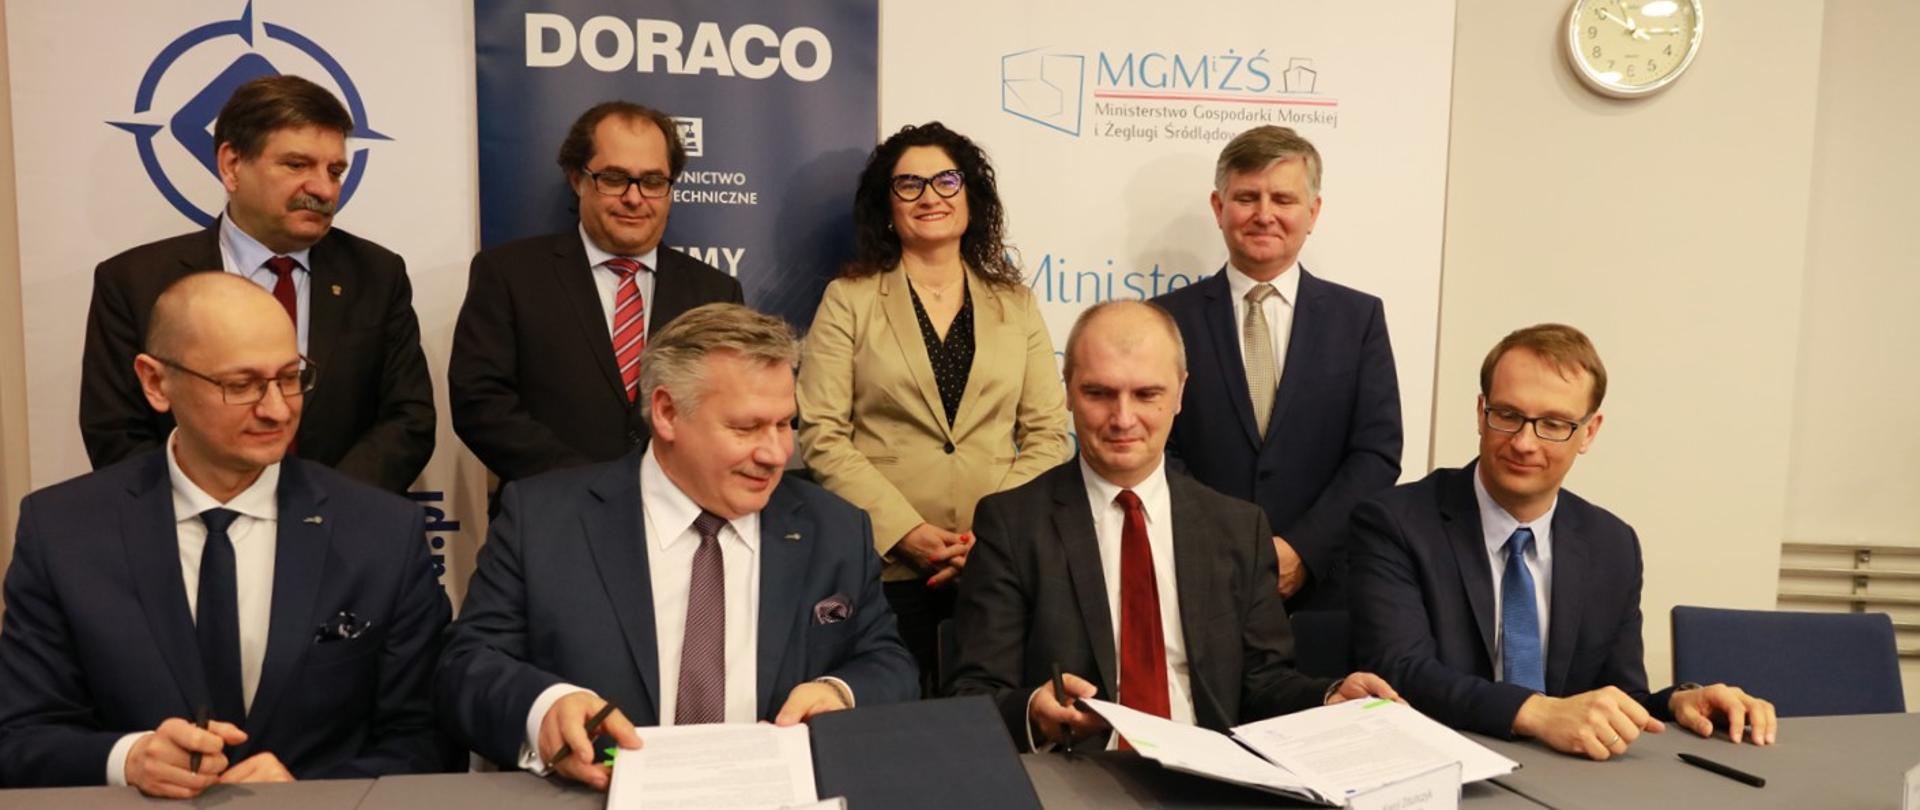 Prezes Portu Gdynia oraz przedstawiciel firmy Doraco podpisują umowę w tle min. minister M. Gróbarczyk